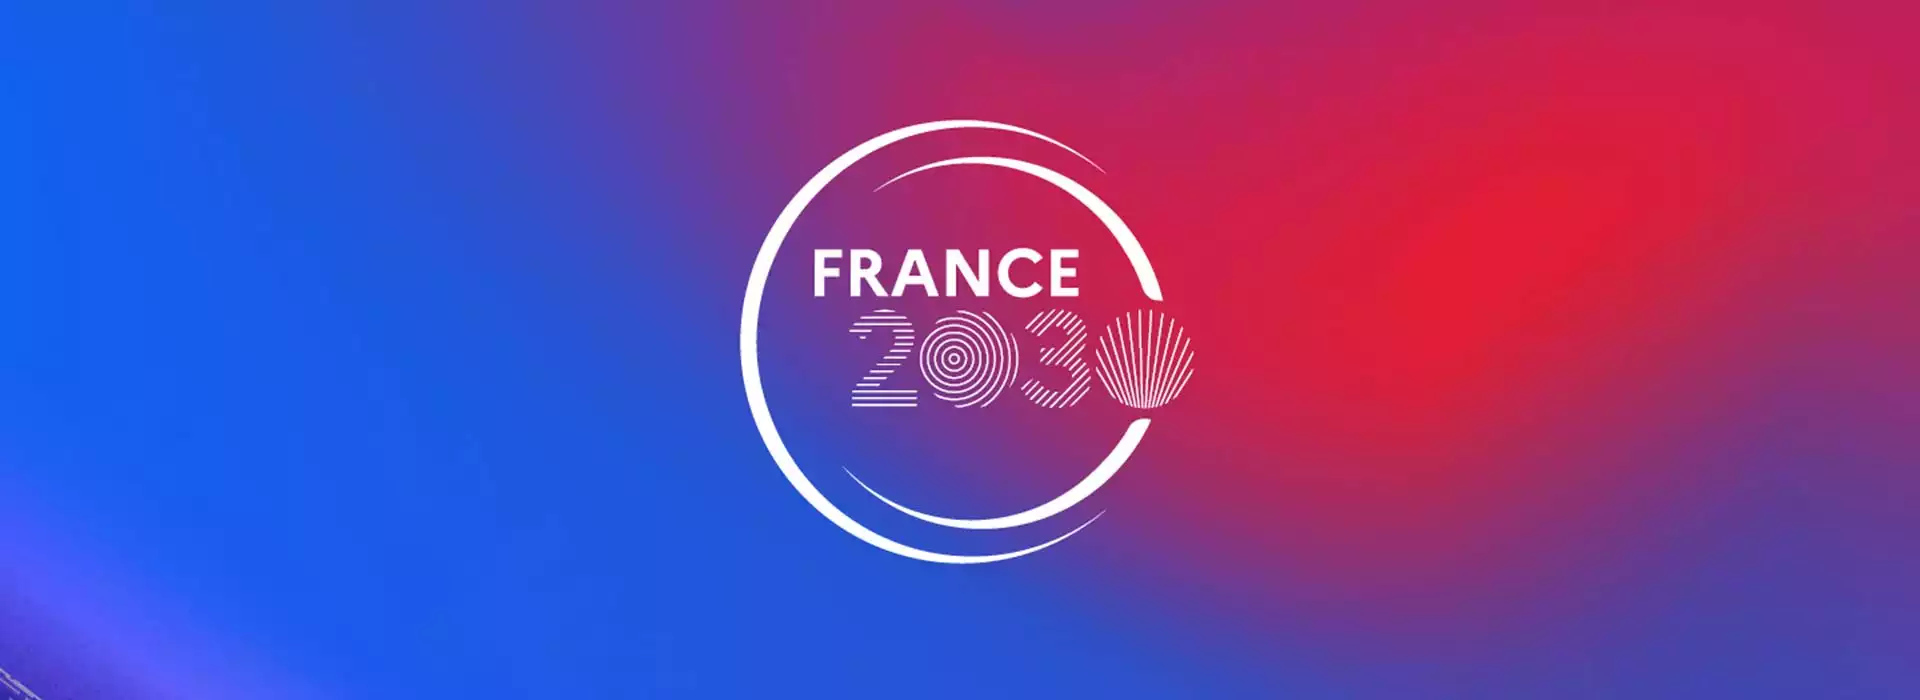 rapprocher le futur France 2030